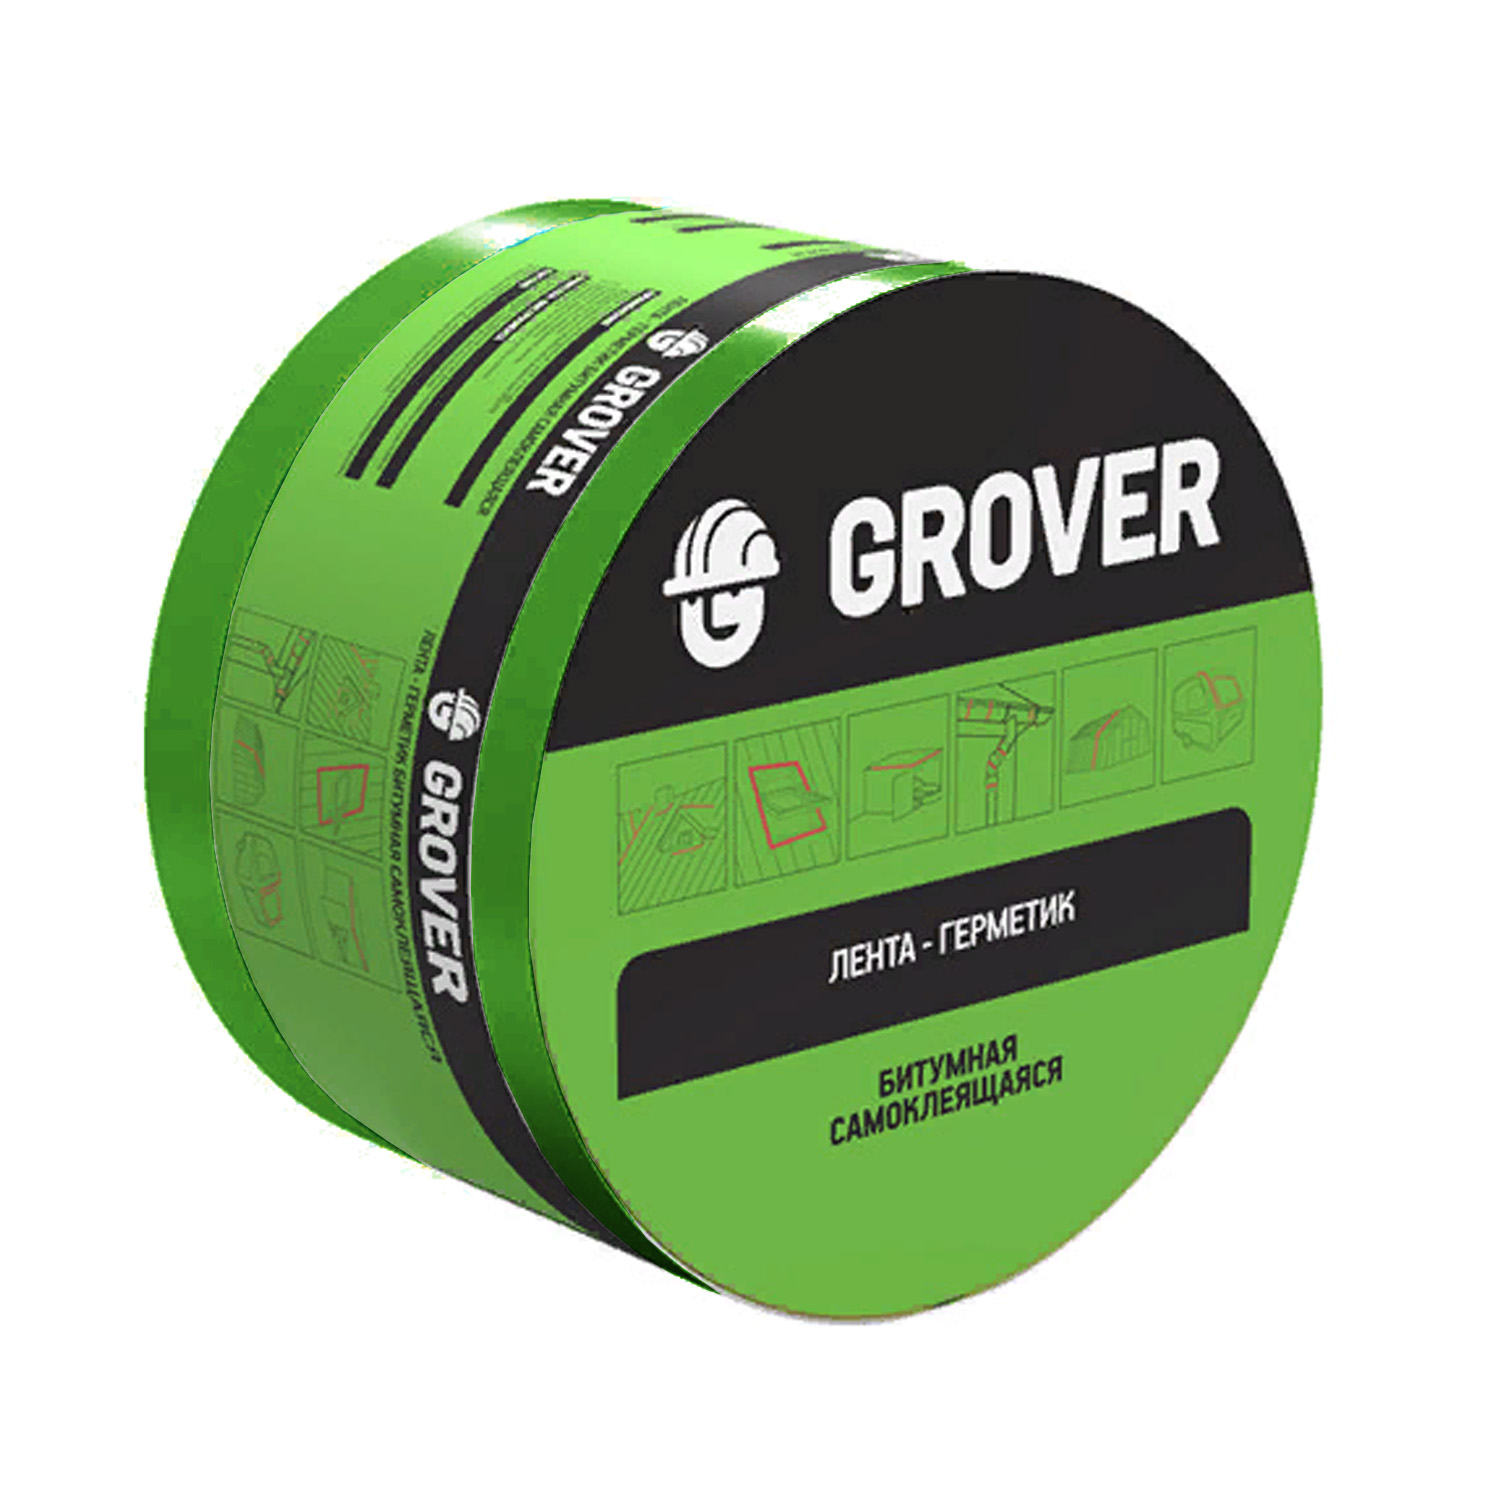 Лента-герметик Grover битумная зеленая 100 мм (3 м) - Купить с .